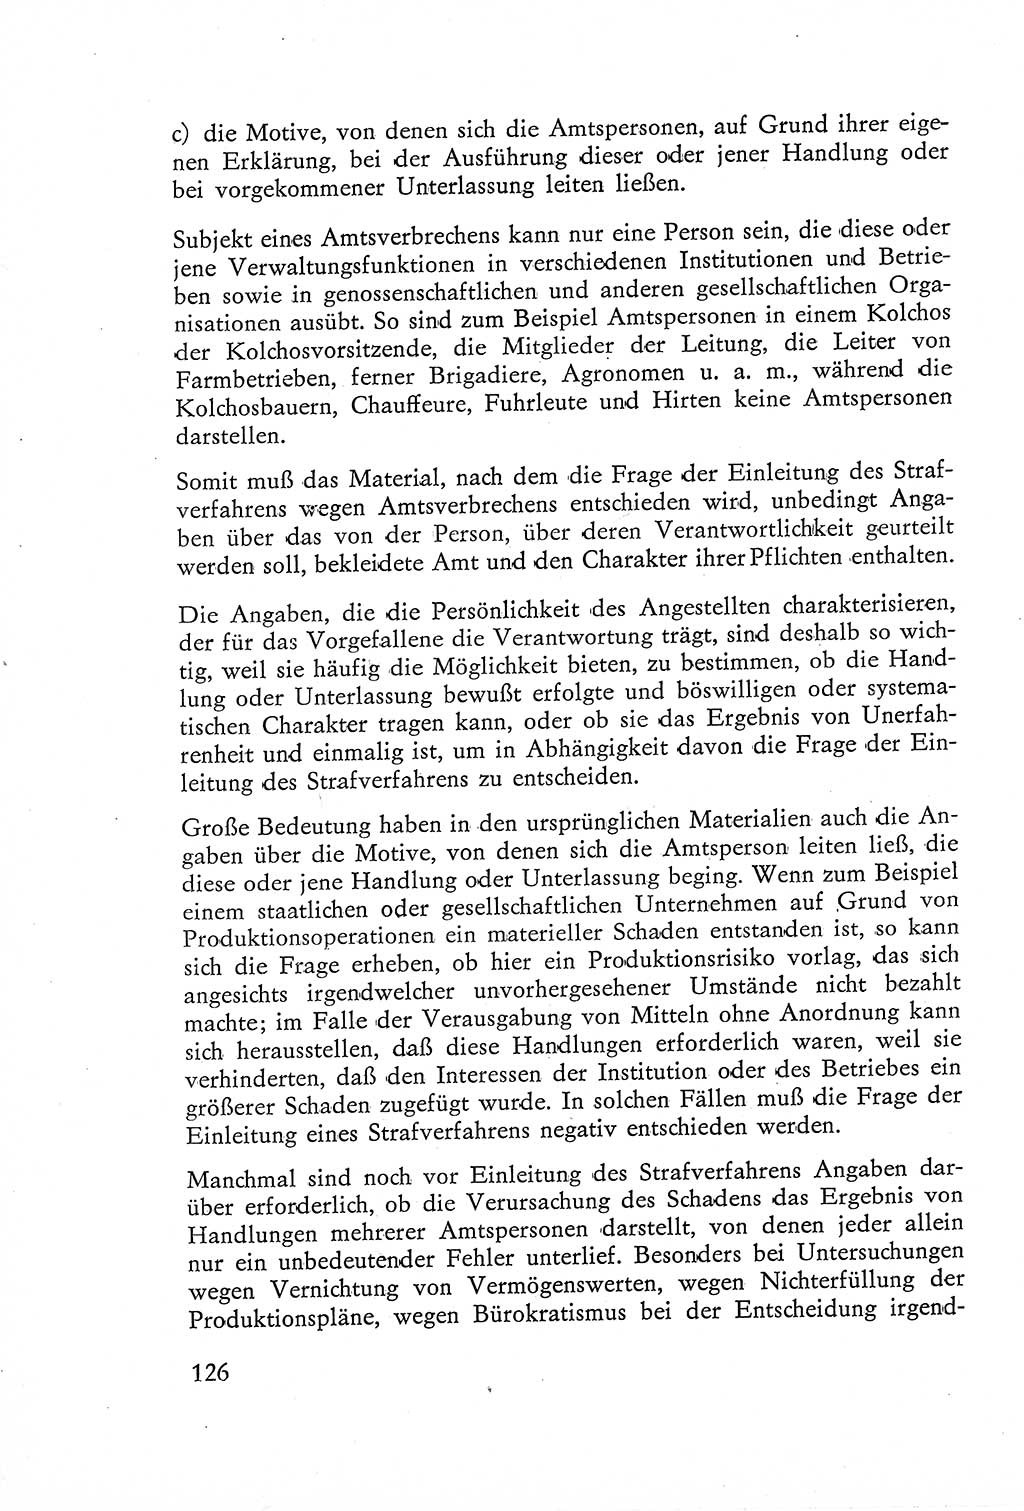 Die Untersuchung einzelner Verbrechensarten [Deutsche Demokratische Republik (DDR)] 1960, Seite 126 (Unters. Verbr.-Art. DDR 1960, S. 126)